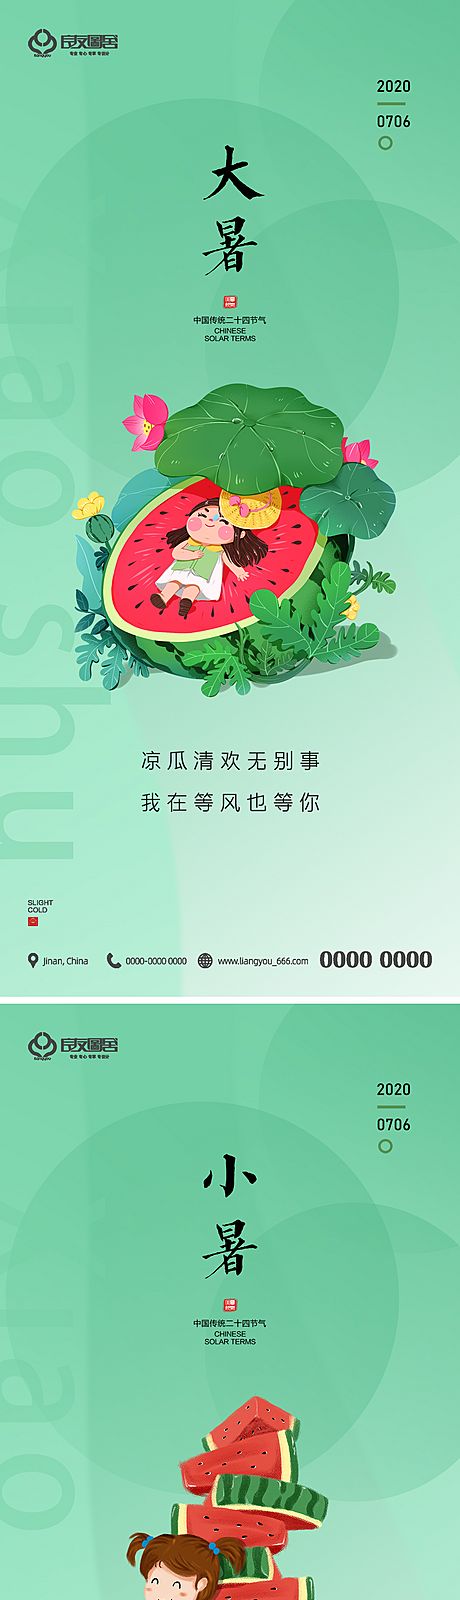 仙图网-地产小暑大暑节日节气系列海报